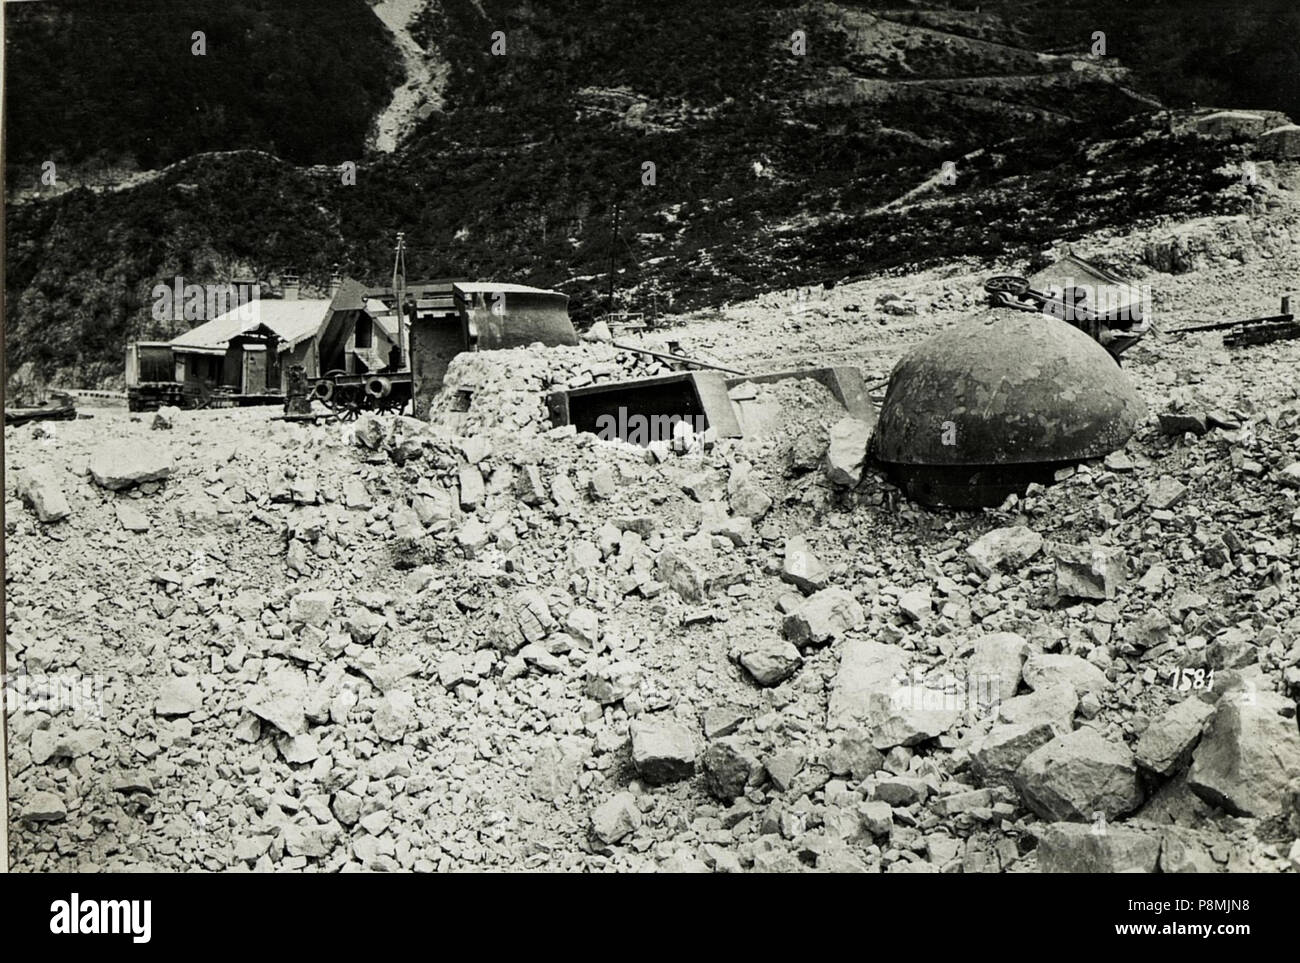 581 Werksgruppe Valmorbia mit Kuppel mit Beobachtungsstand, Fortspanzer nach der Beschießung am 18.5.1916. (BildID 15587574) Foto Stock